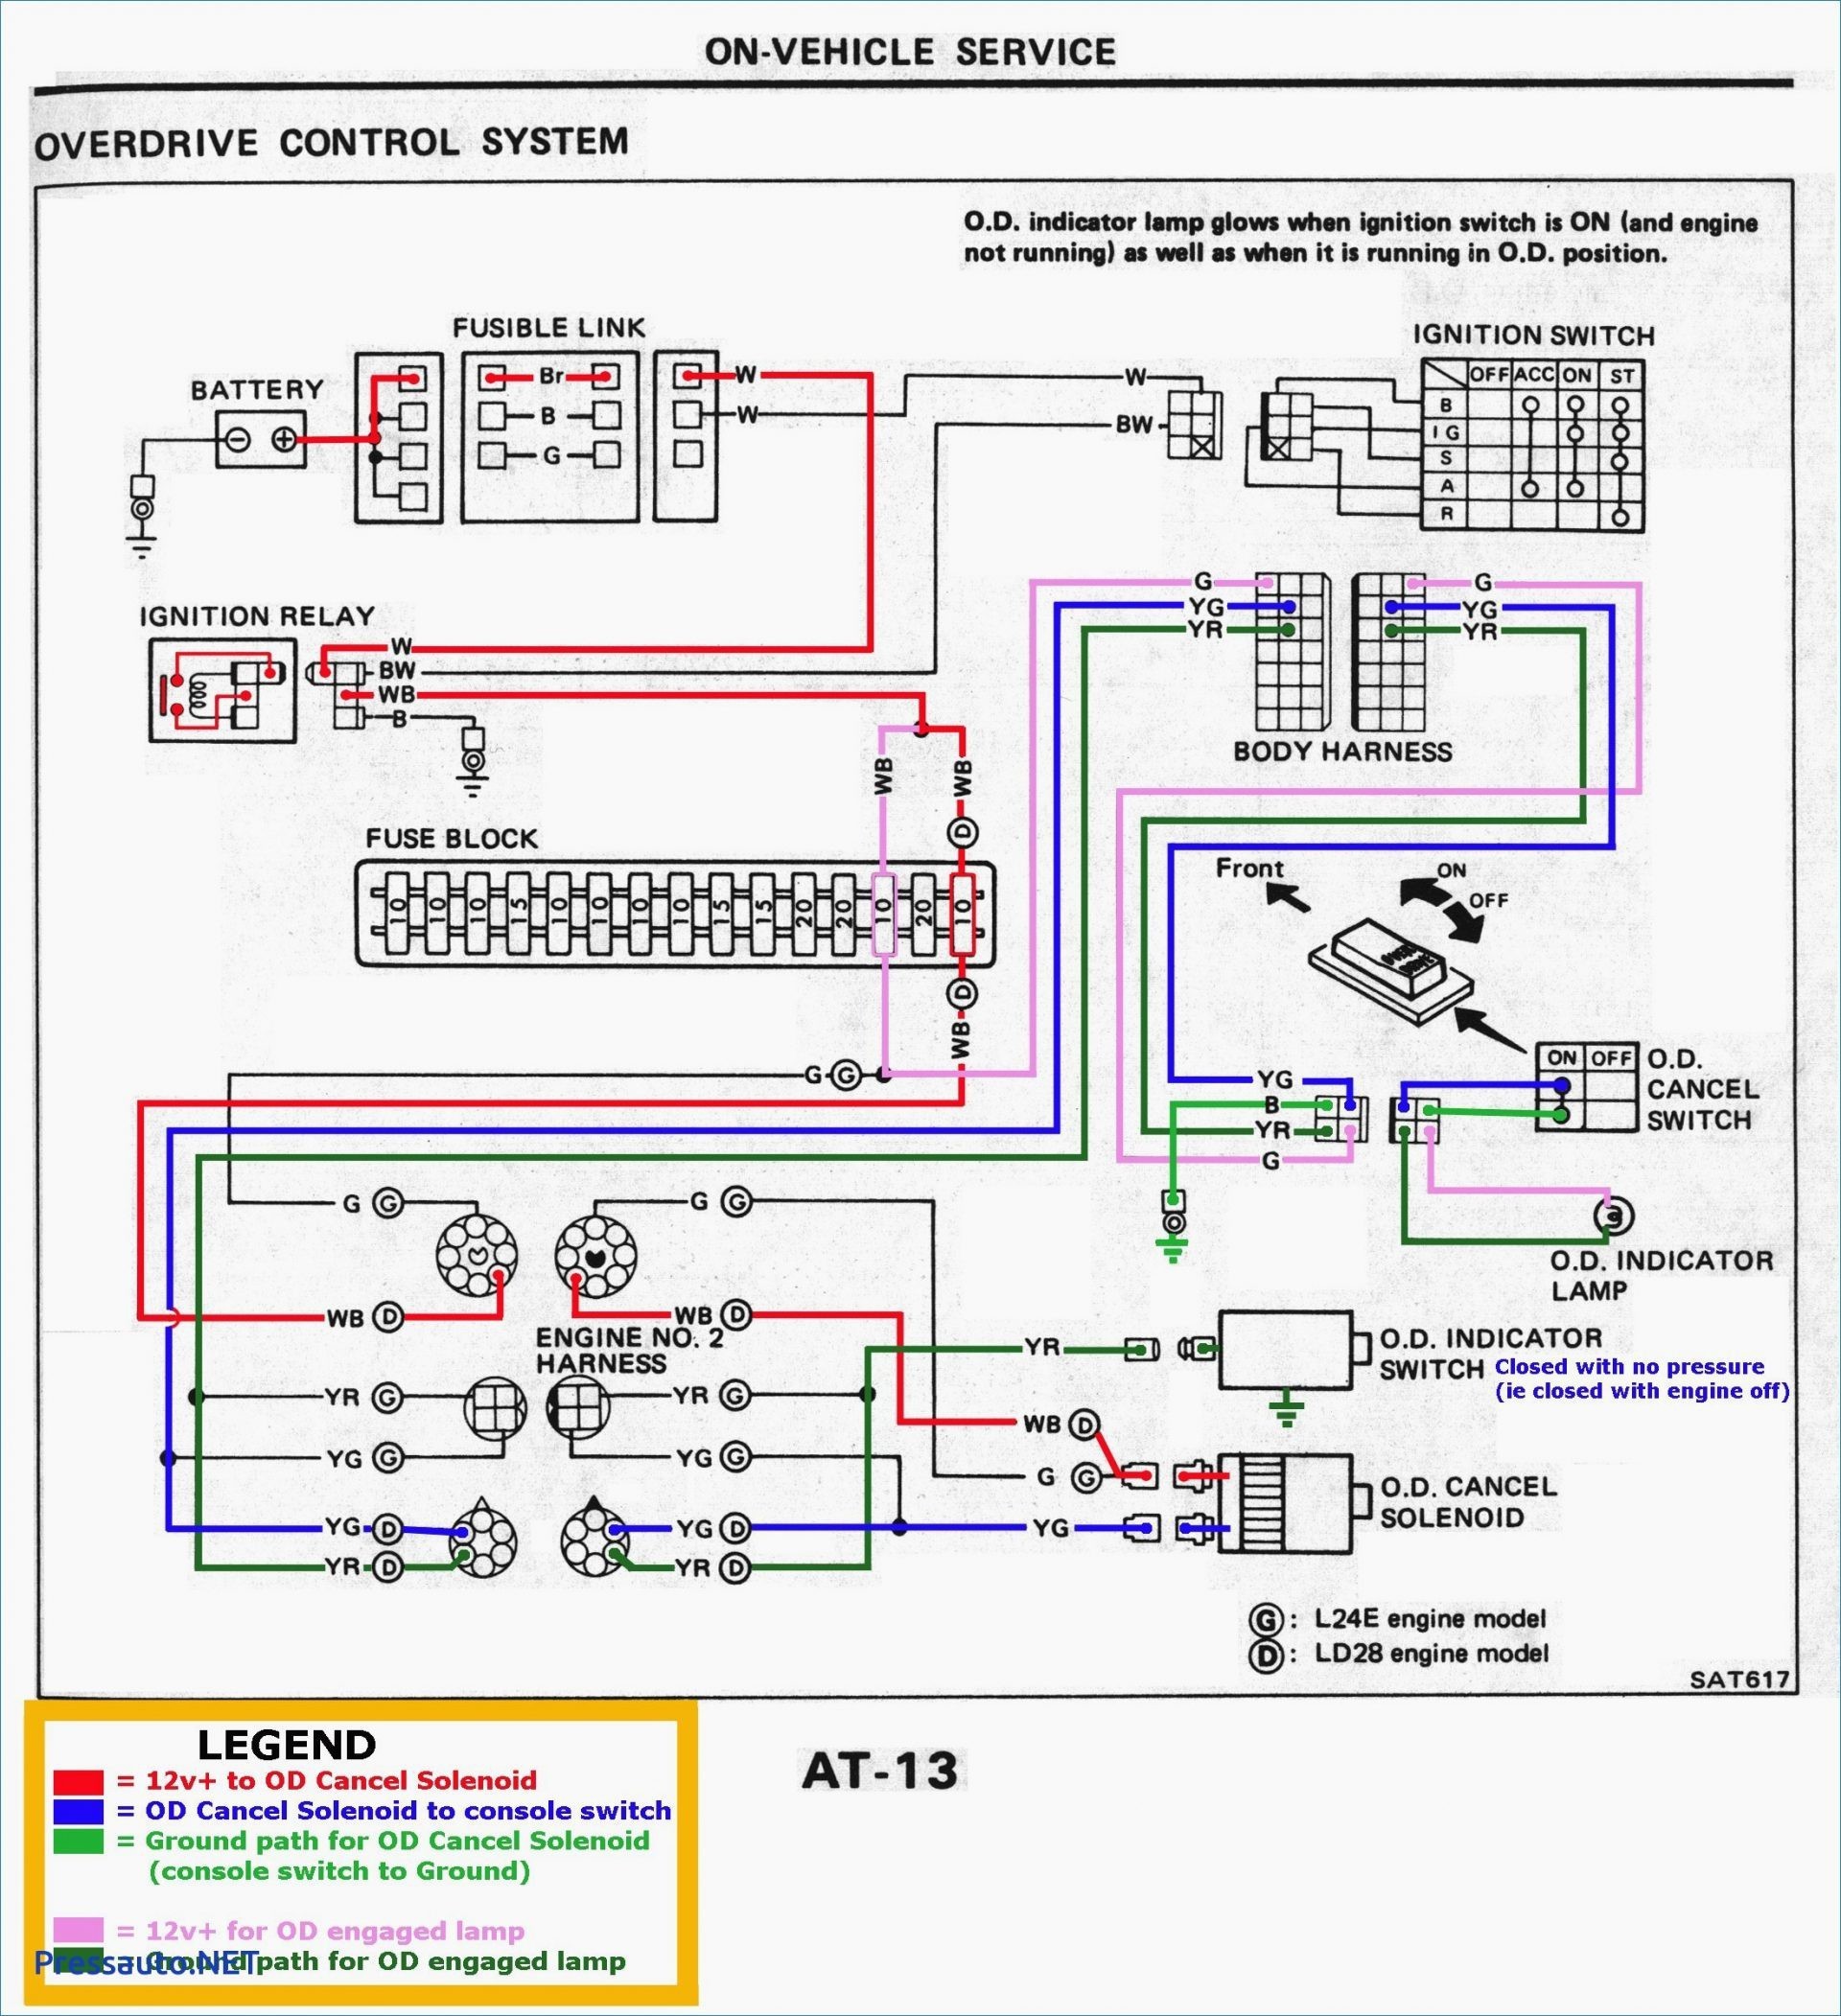 Remote Car Starter Wiring Diagram Wiring Diagram for Remote Car Starter Refrence Led Tail Lights